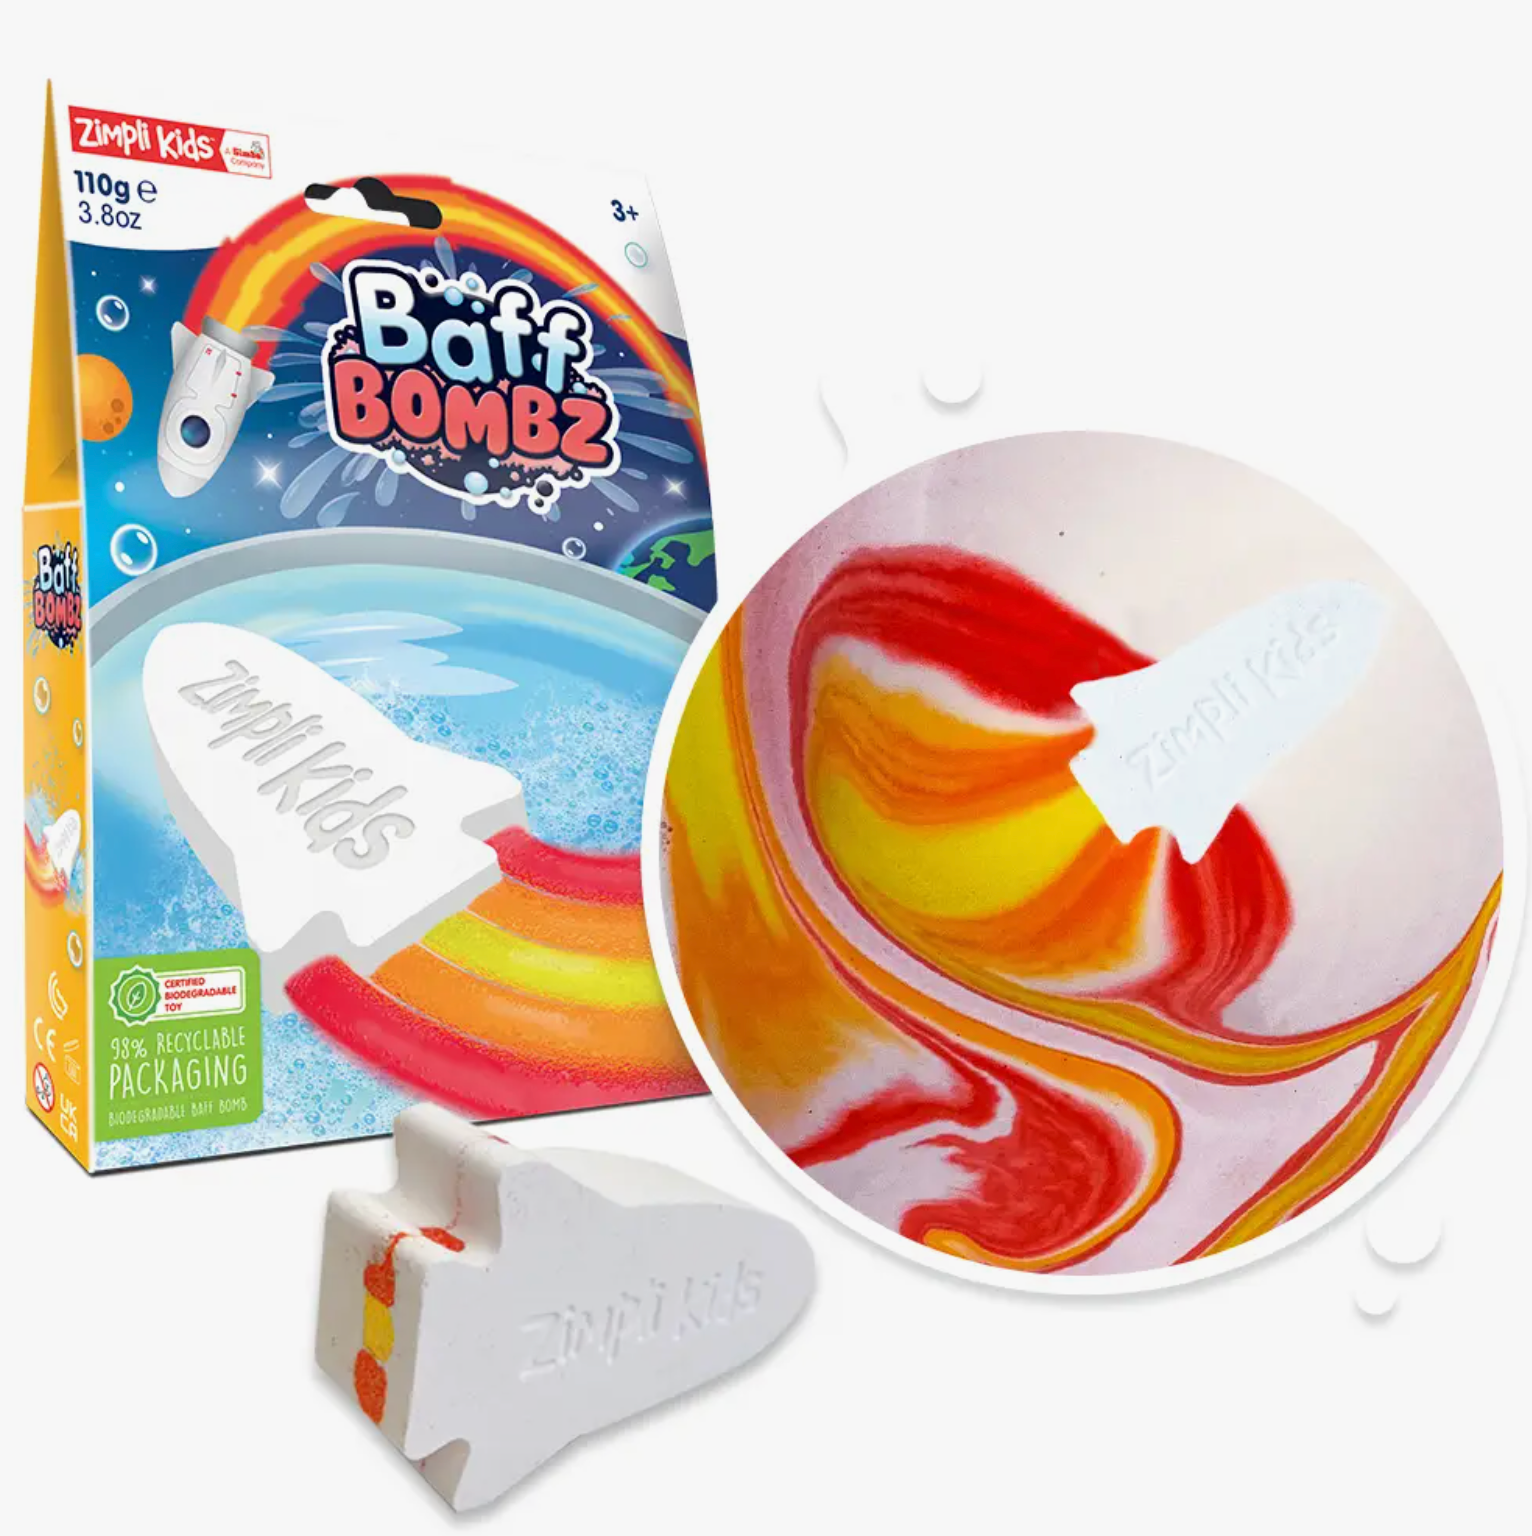 Rocket Baff Bombz - Bath Bomb Fizz Toy